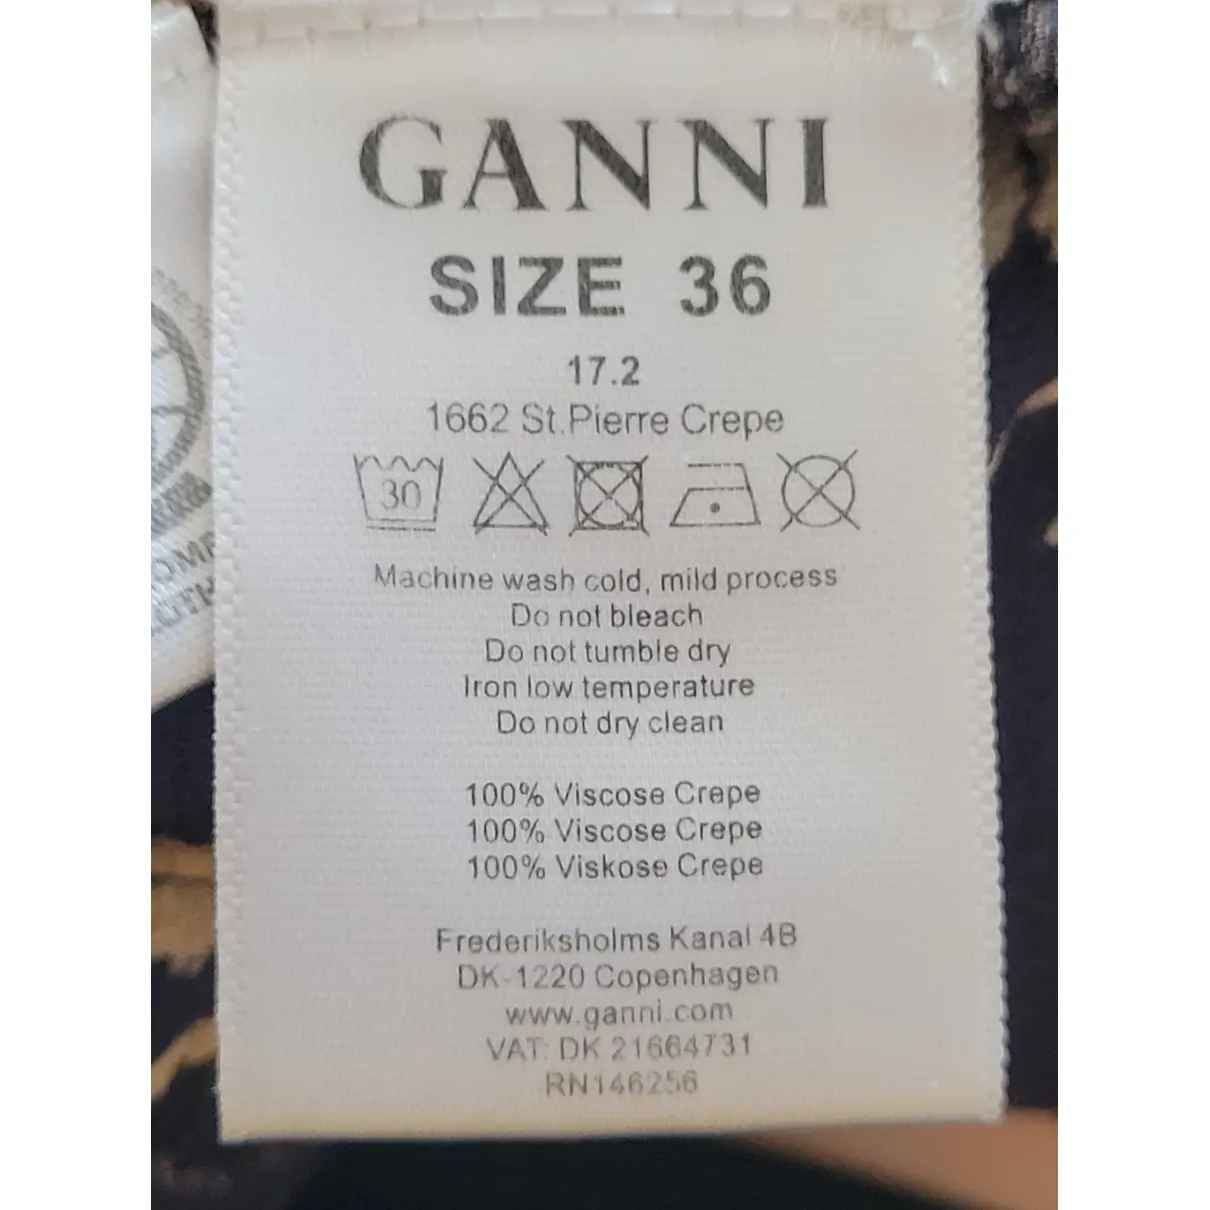 Luxury Ganni Trousers Women